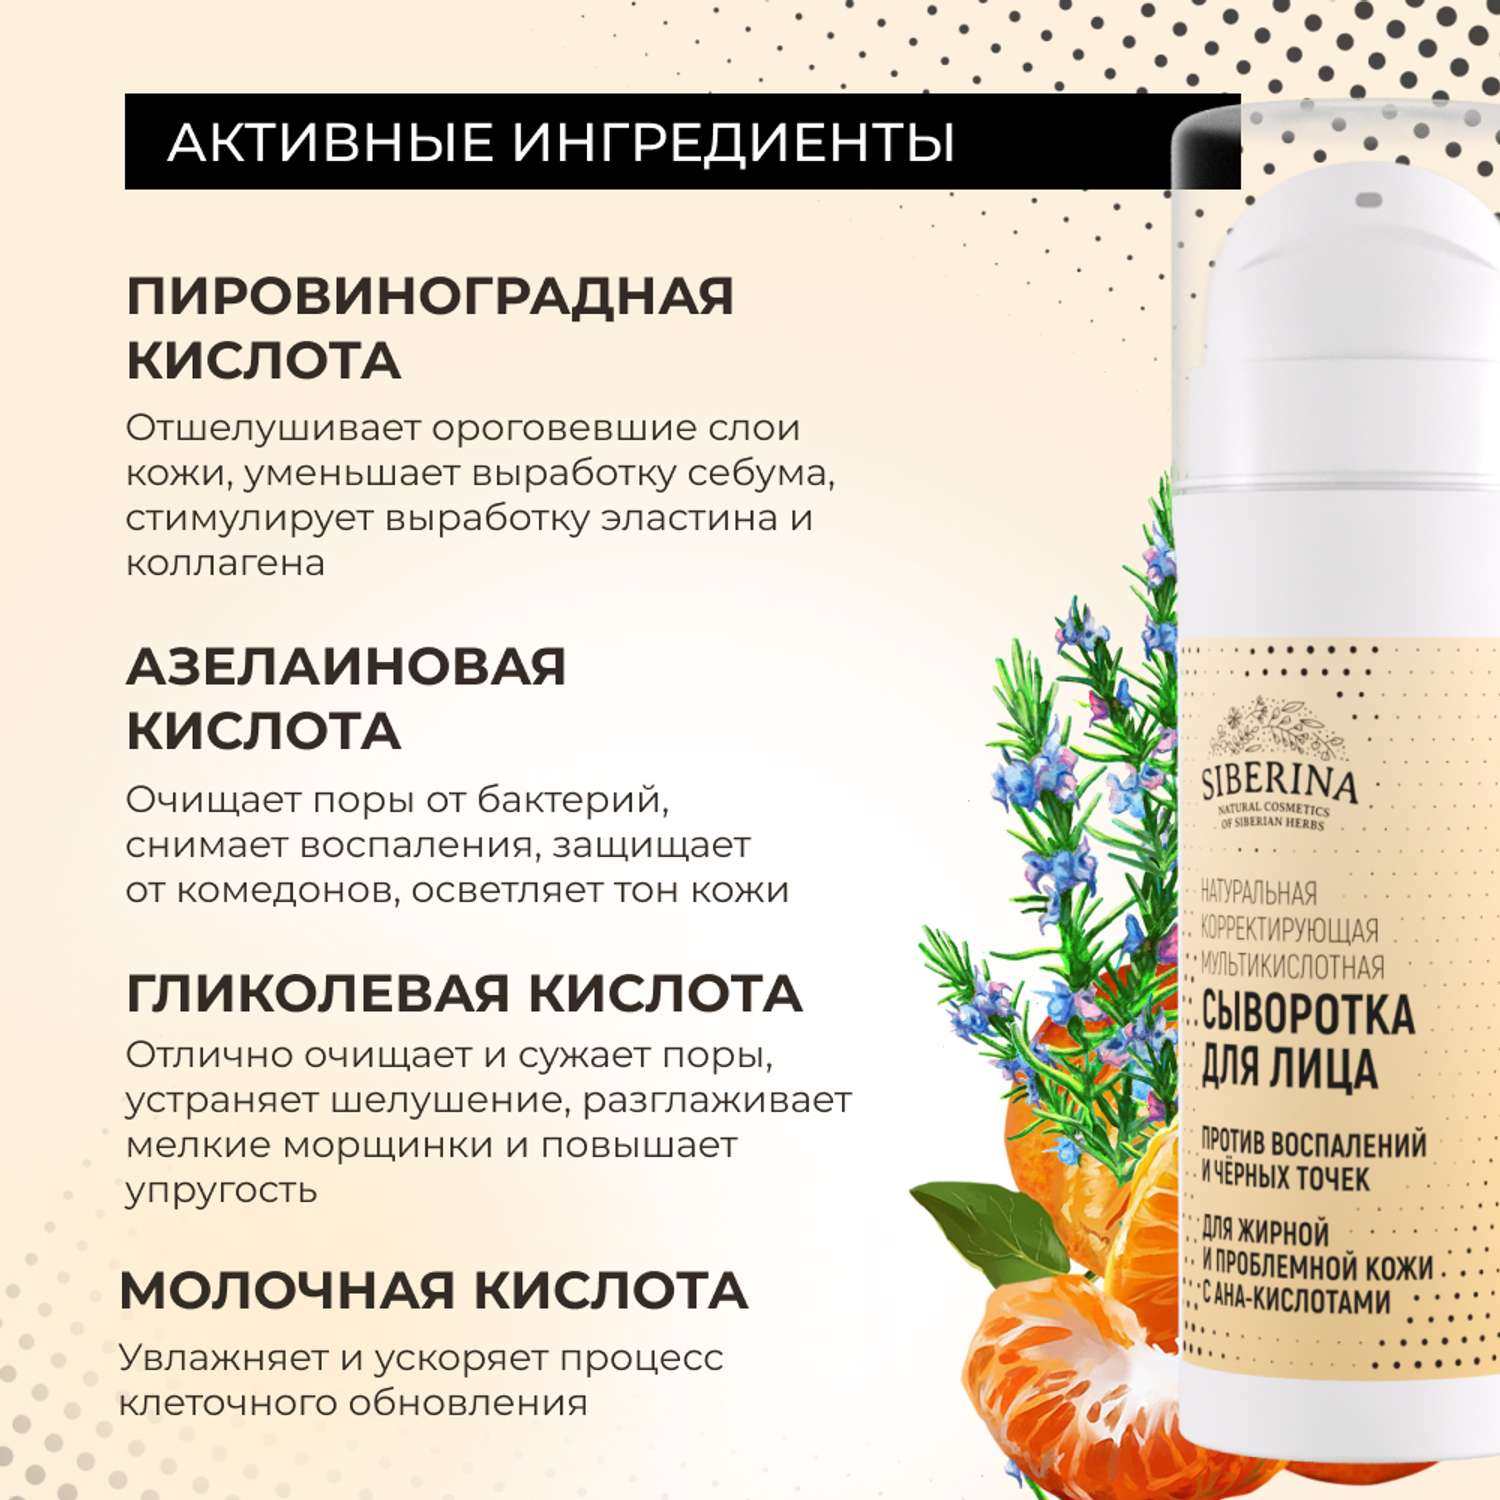 Сыворотка для лица Siberina натуральная для жирной и проблемной кожи c AHA-кислотами 30 мл - фото 5